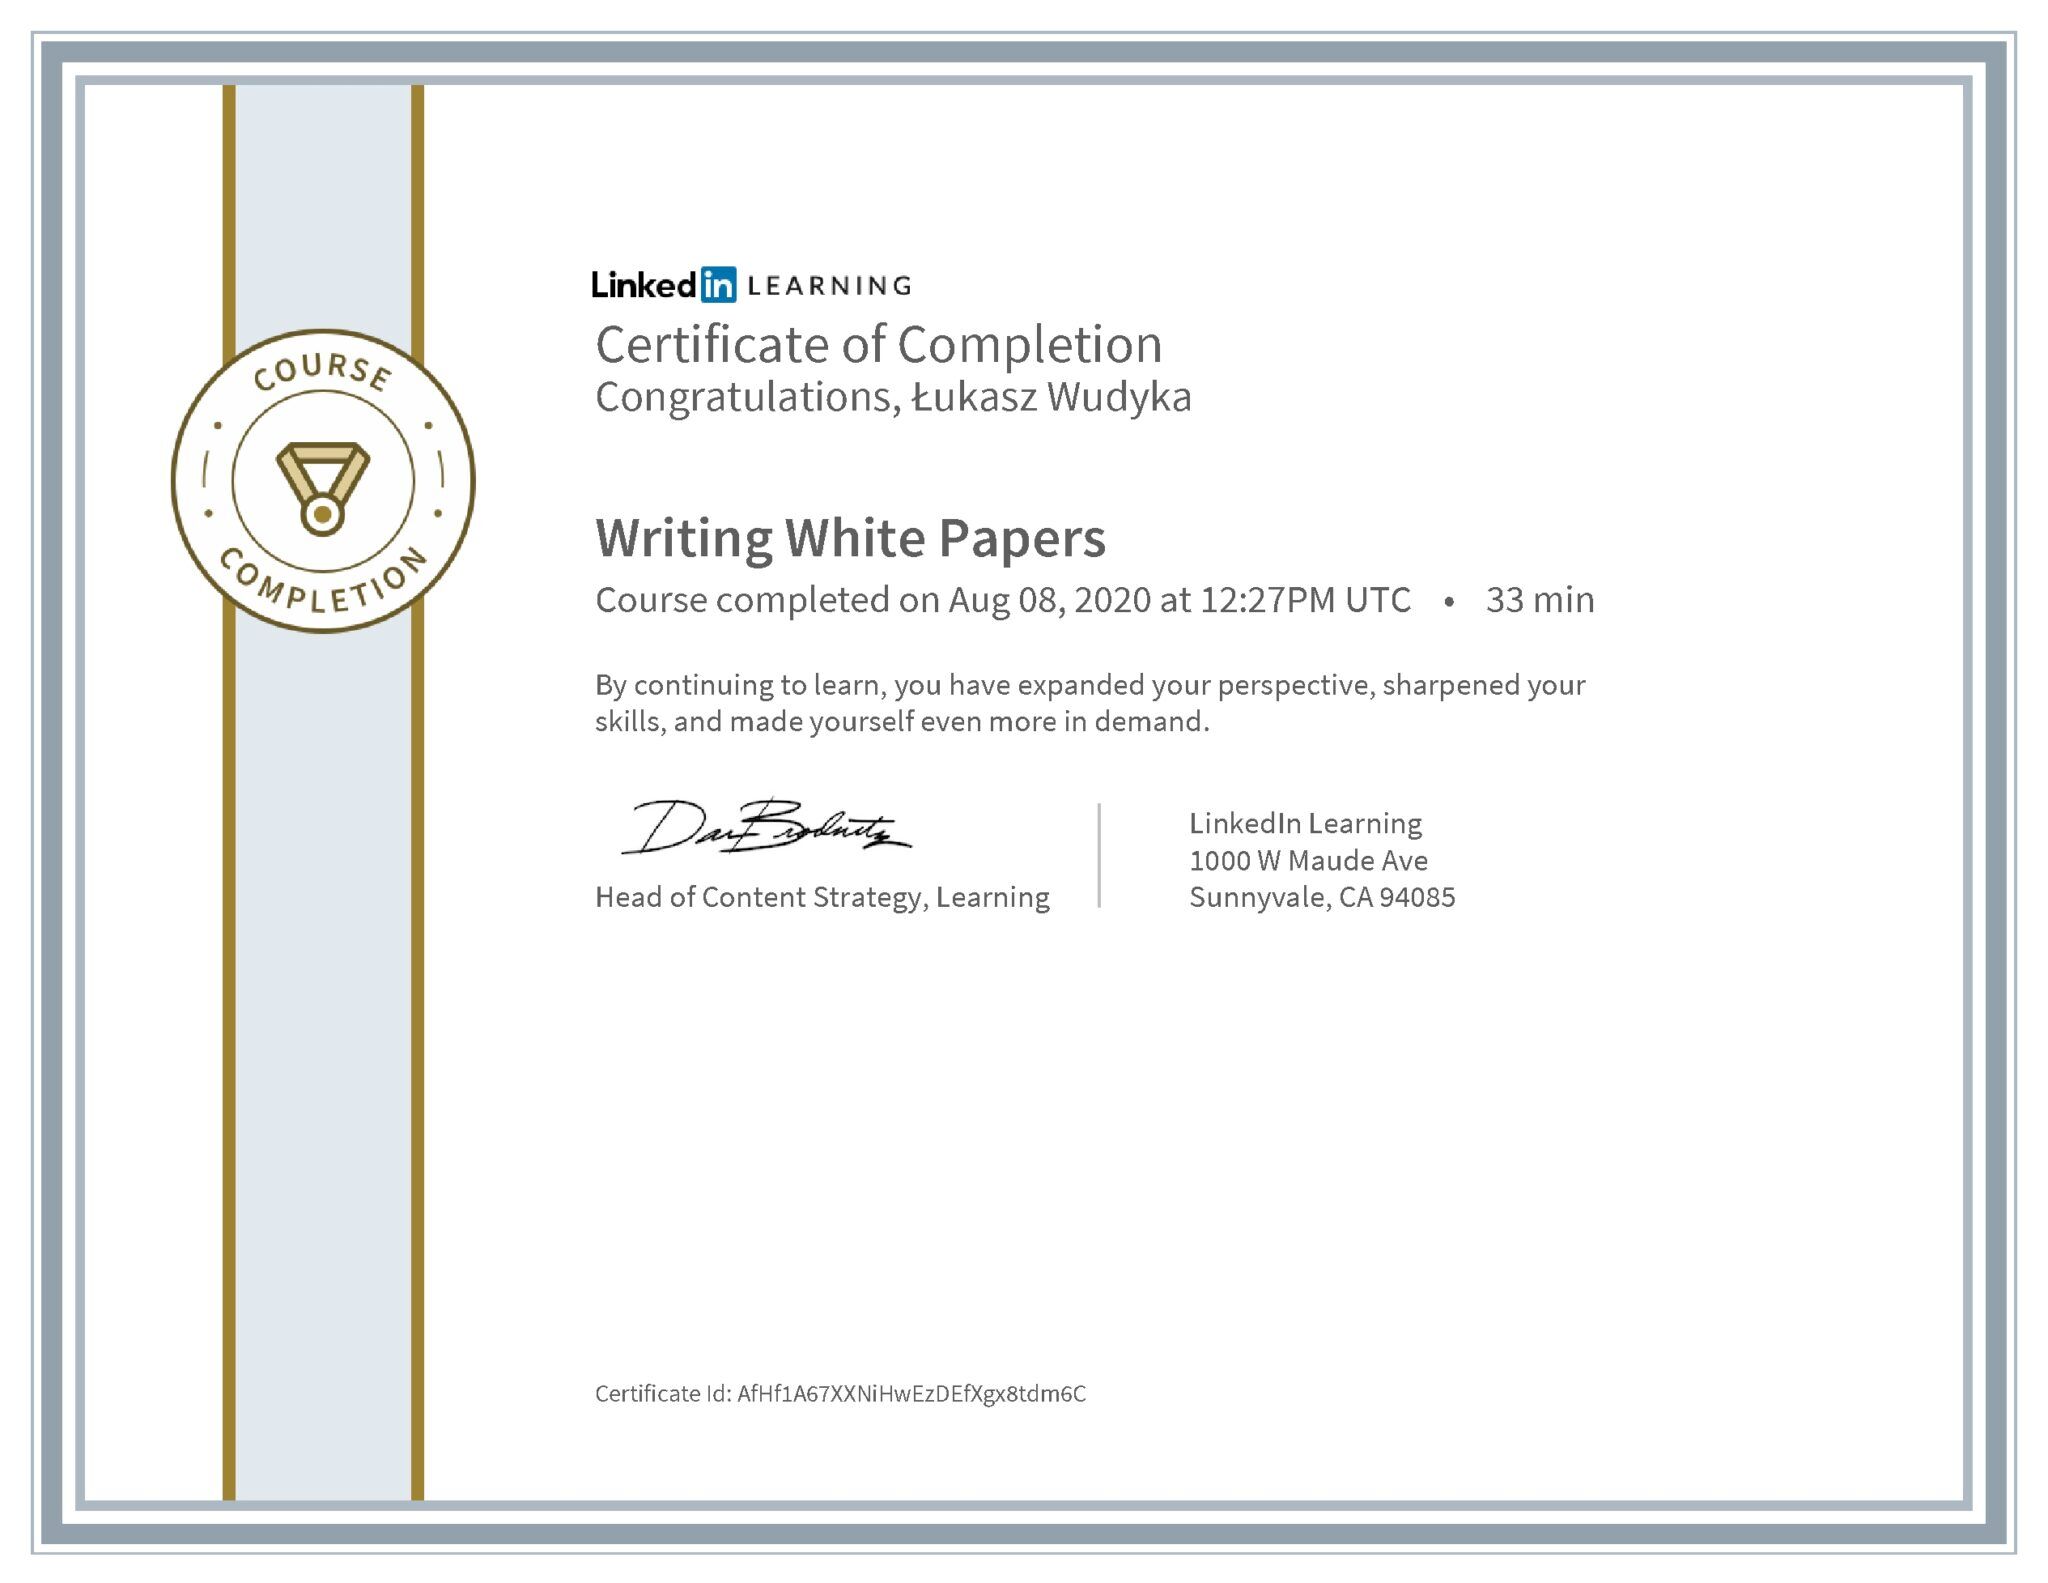 Łukasz Wudyka certyfikat LinkedIn Writing White Papers